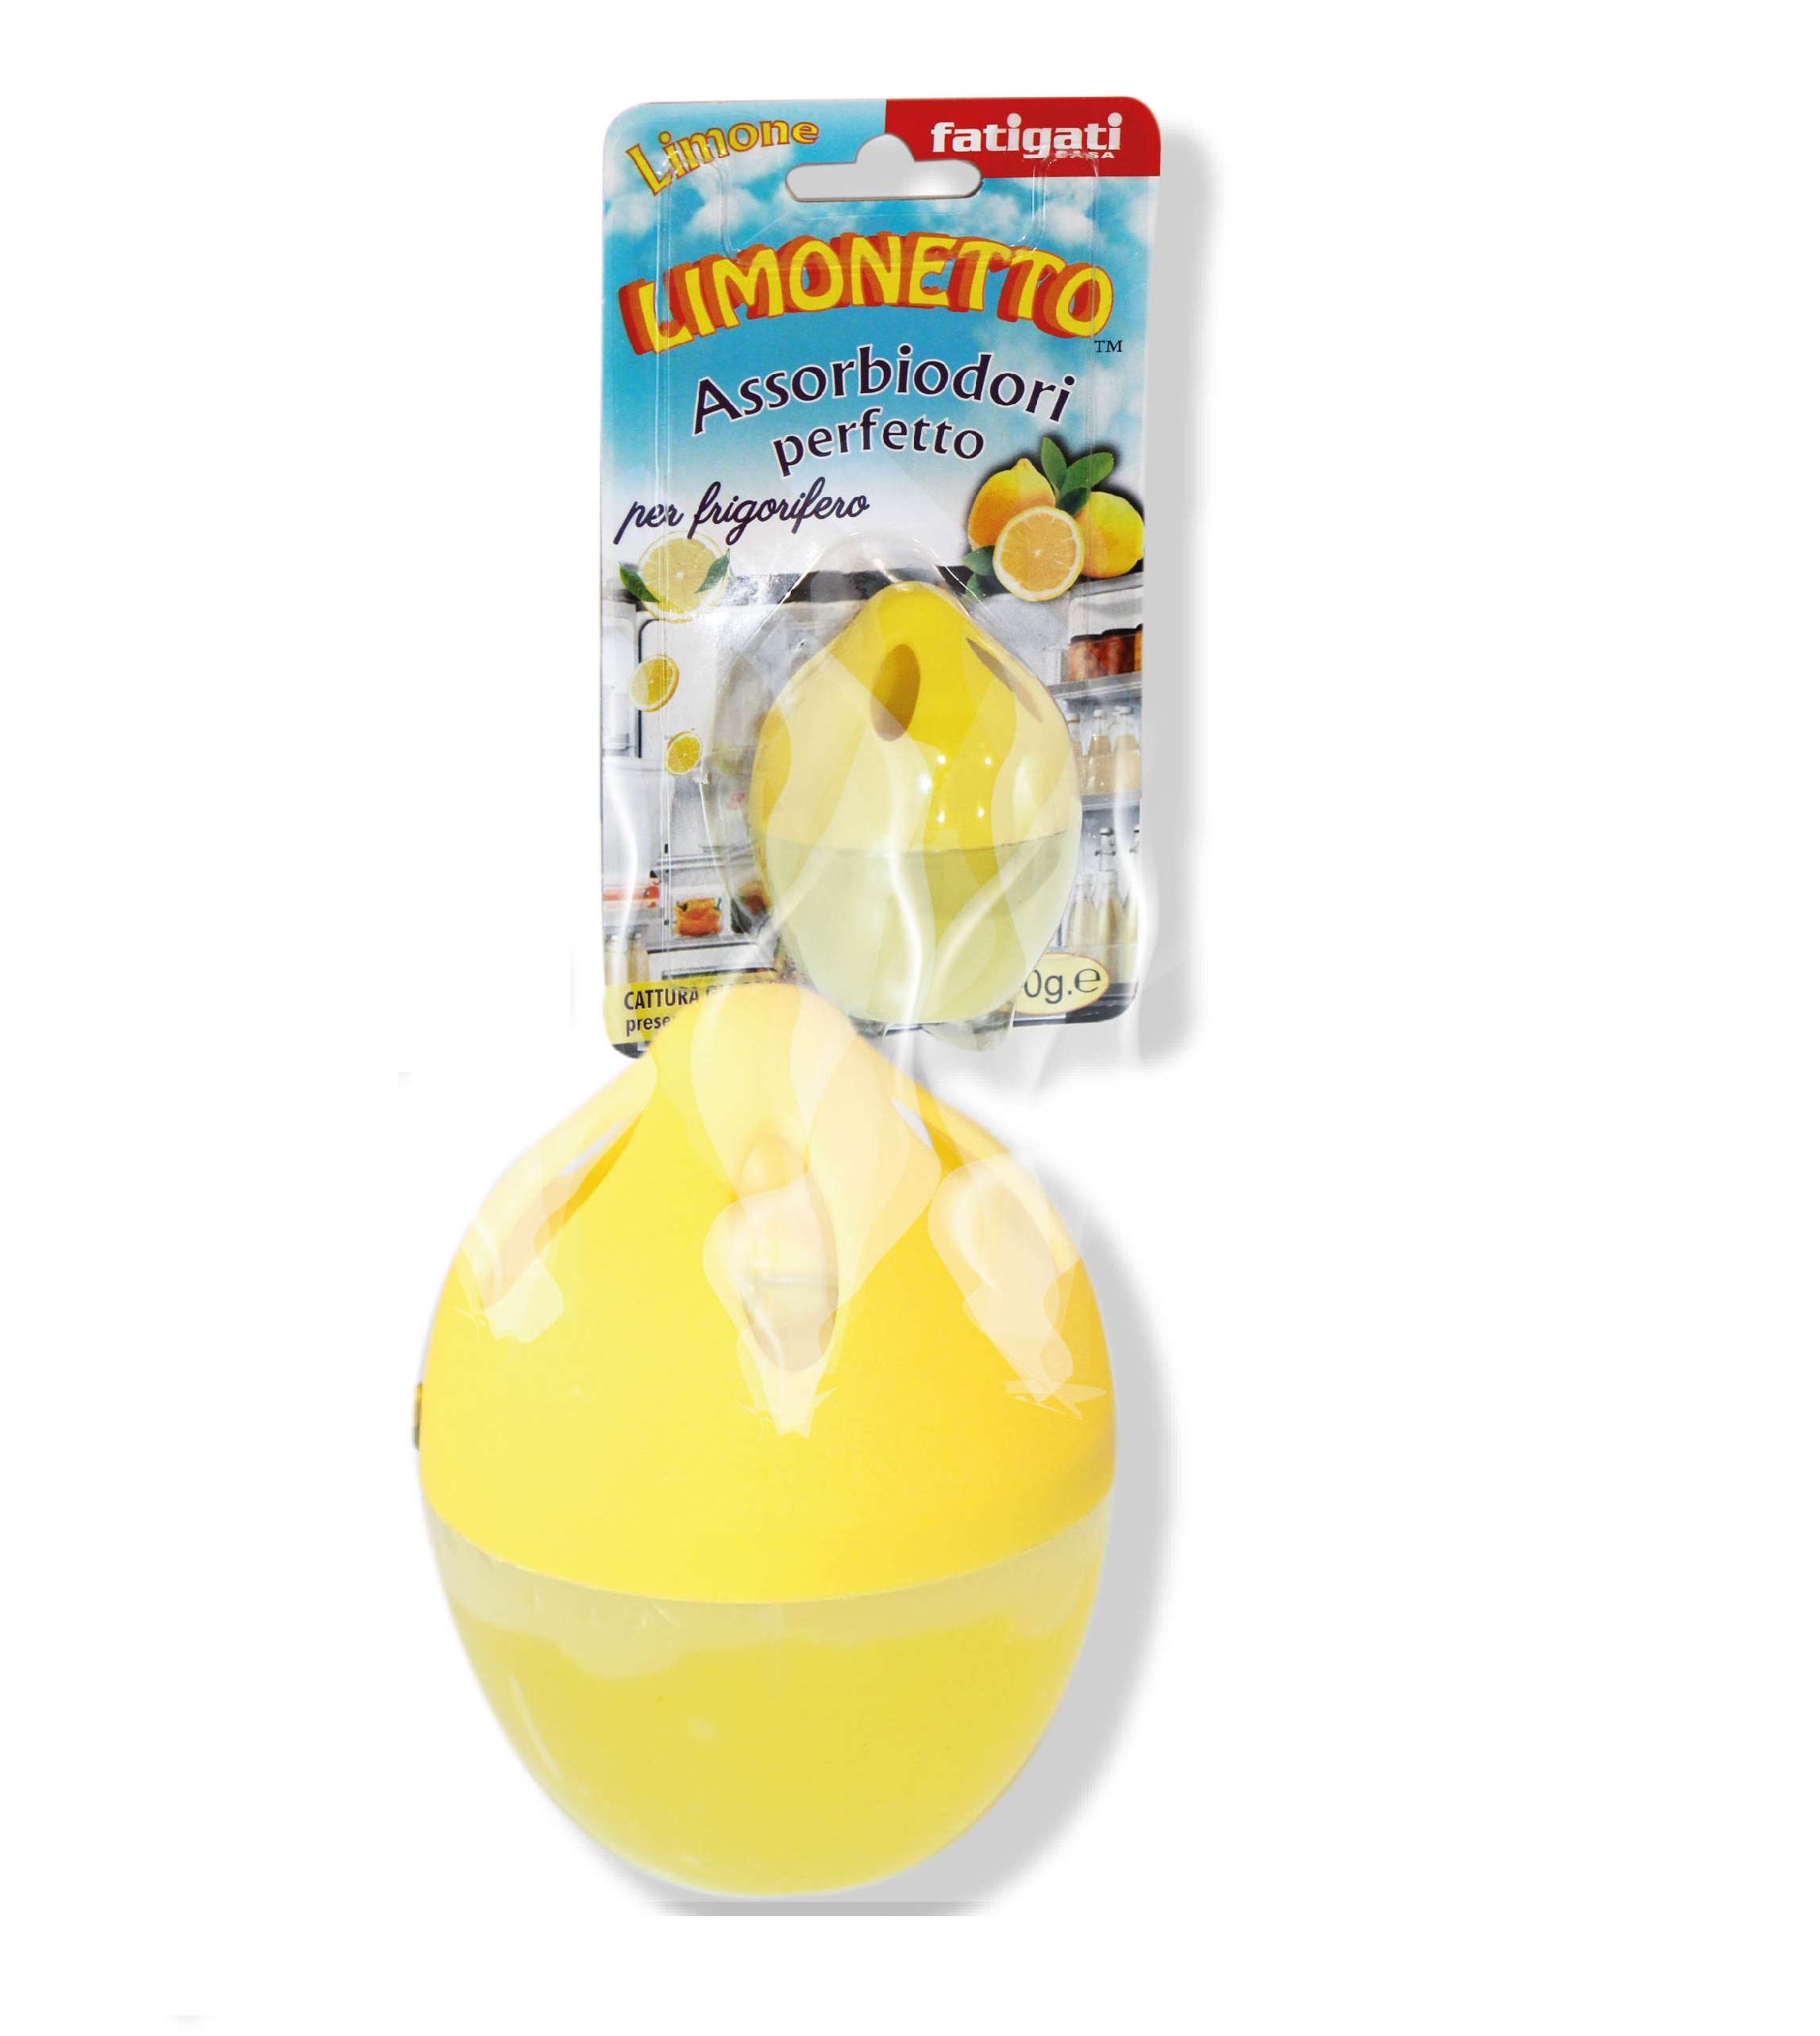 FATIGATI Limonetto Assorbiodori per frigorifero al limone 30 g